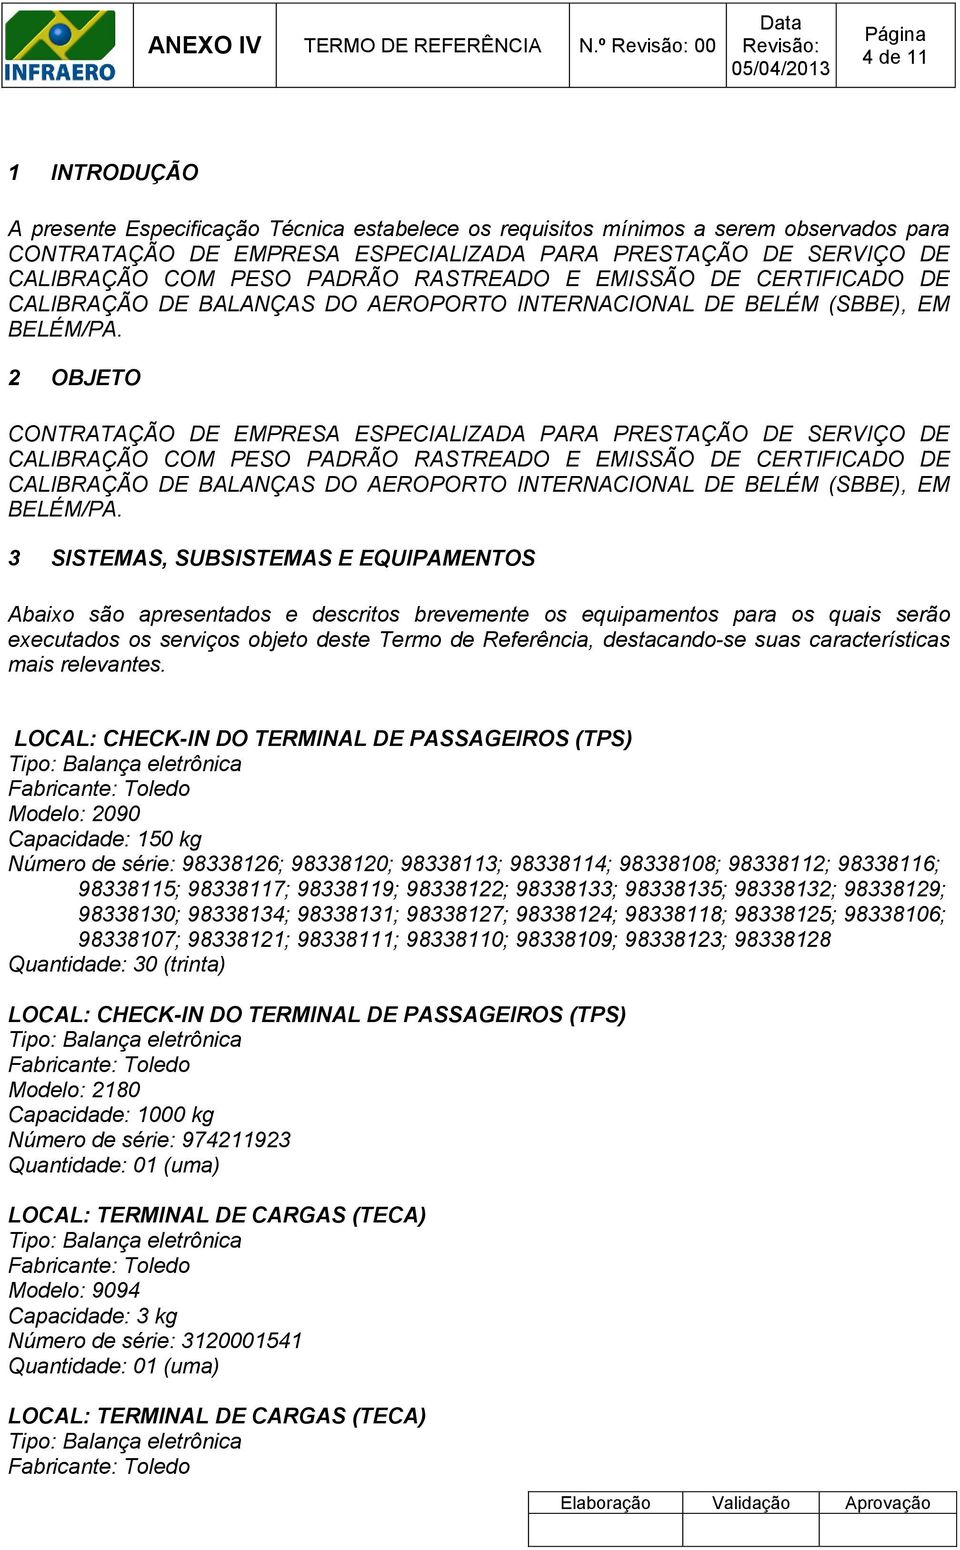 PESO PADRÃO RASTREADO E EMISSÃO DE CERTIFICADO DE CALIBRAÇÃO DE BALANÇAS DO AEROPORTO INTERNACIONAL DE BELÉM (SBBE), EM BELÉM/PA.